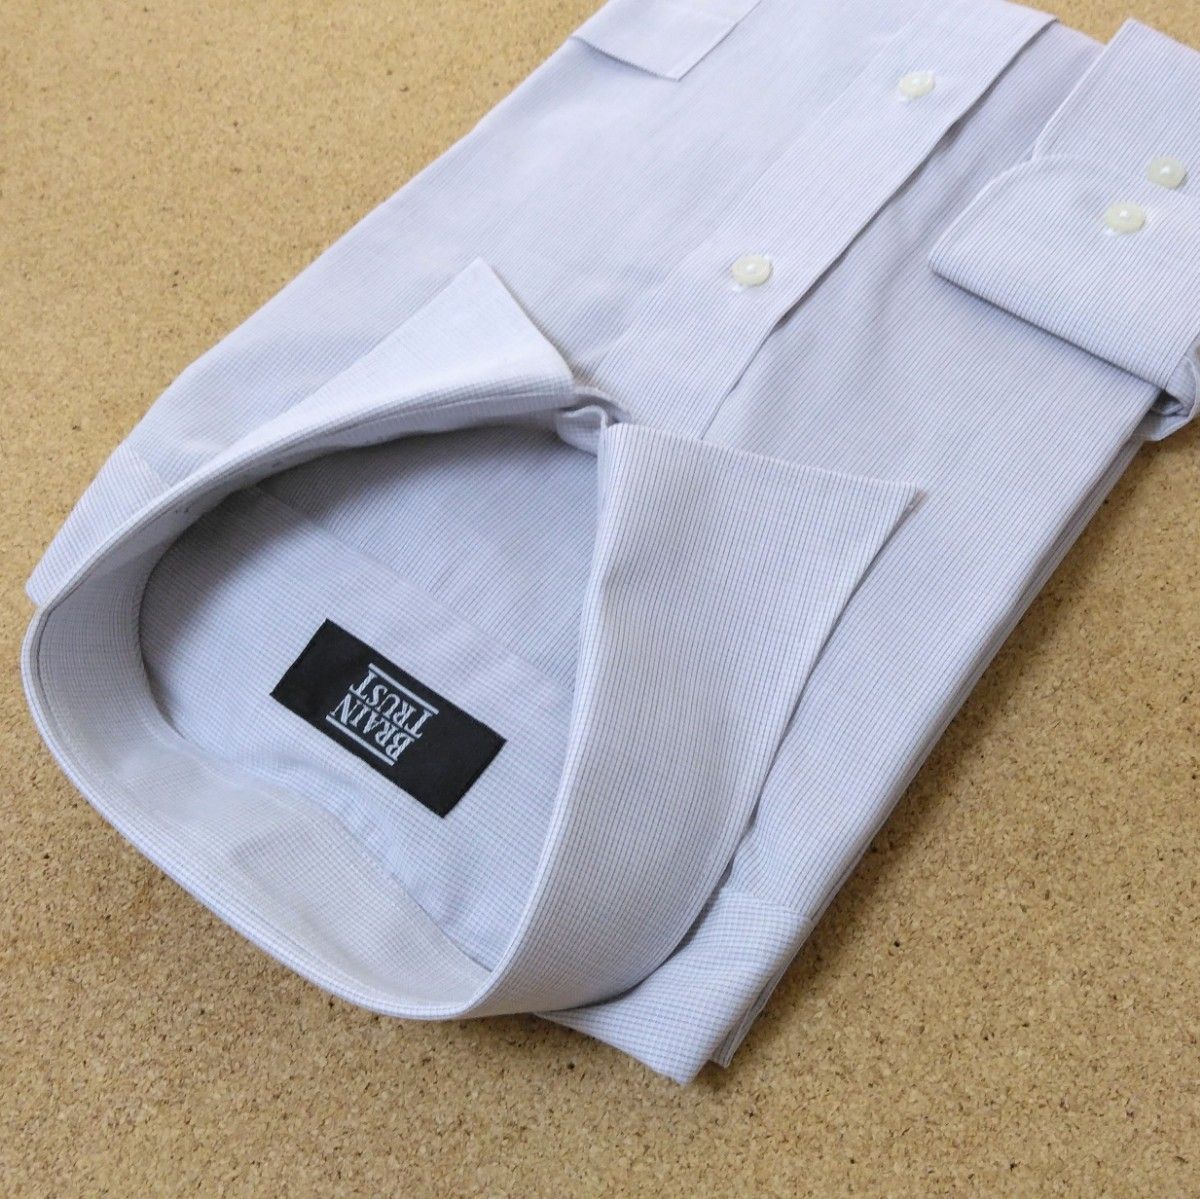 【新品】ワイシャツ 長袖 44-84 メンズ ビジネス